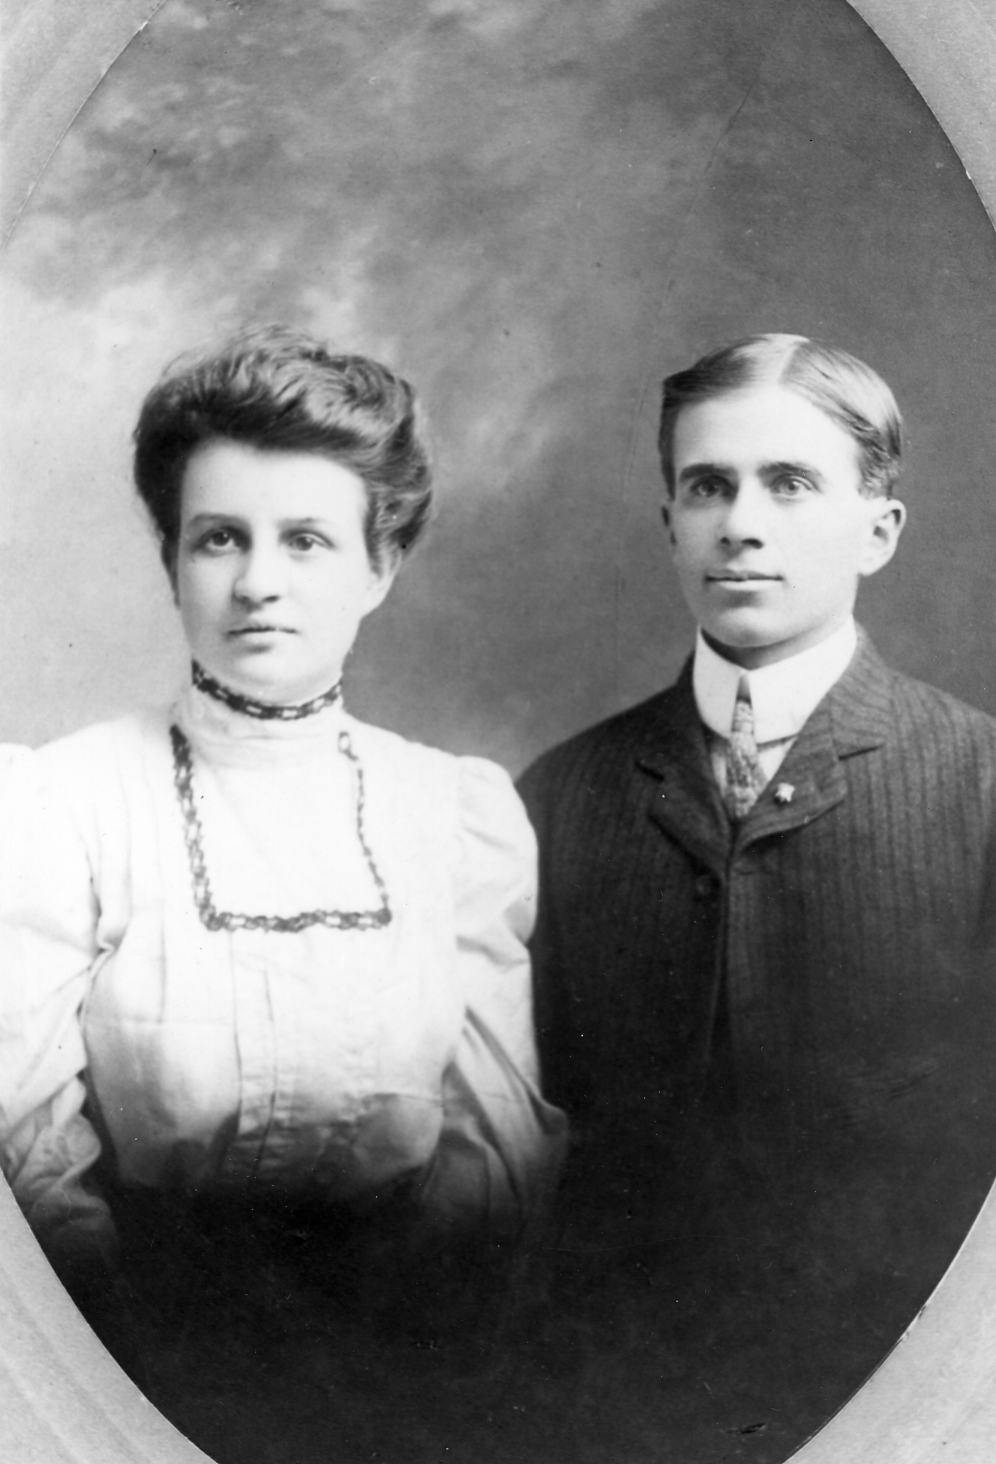 Isabelle & Archie wedding 1905